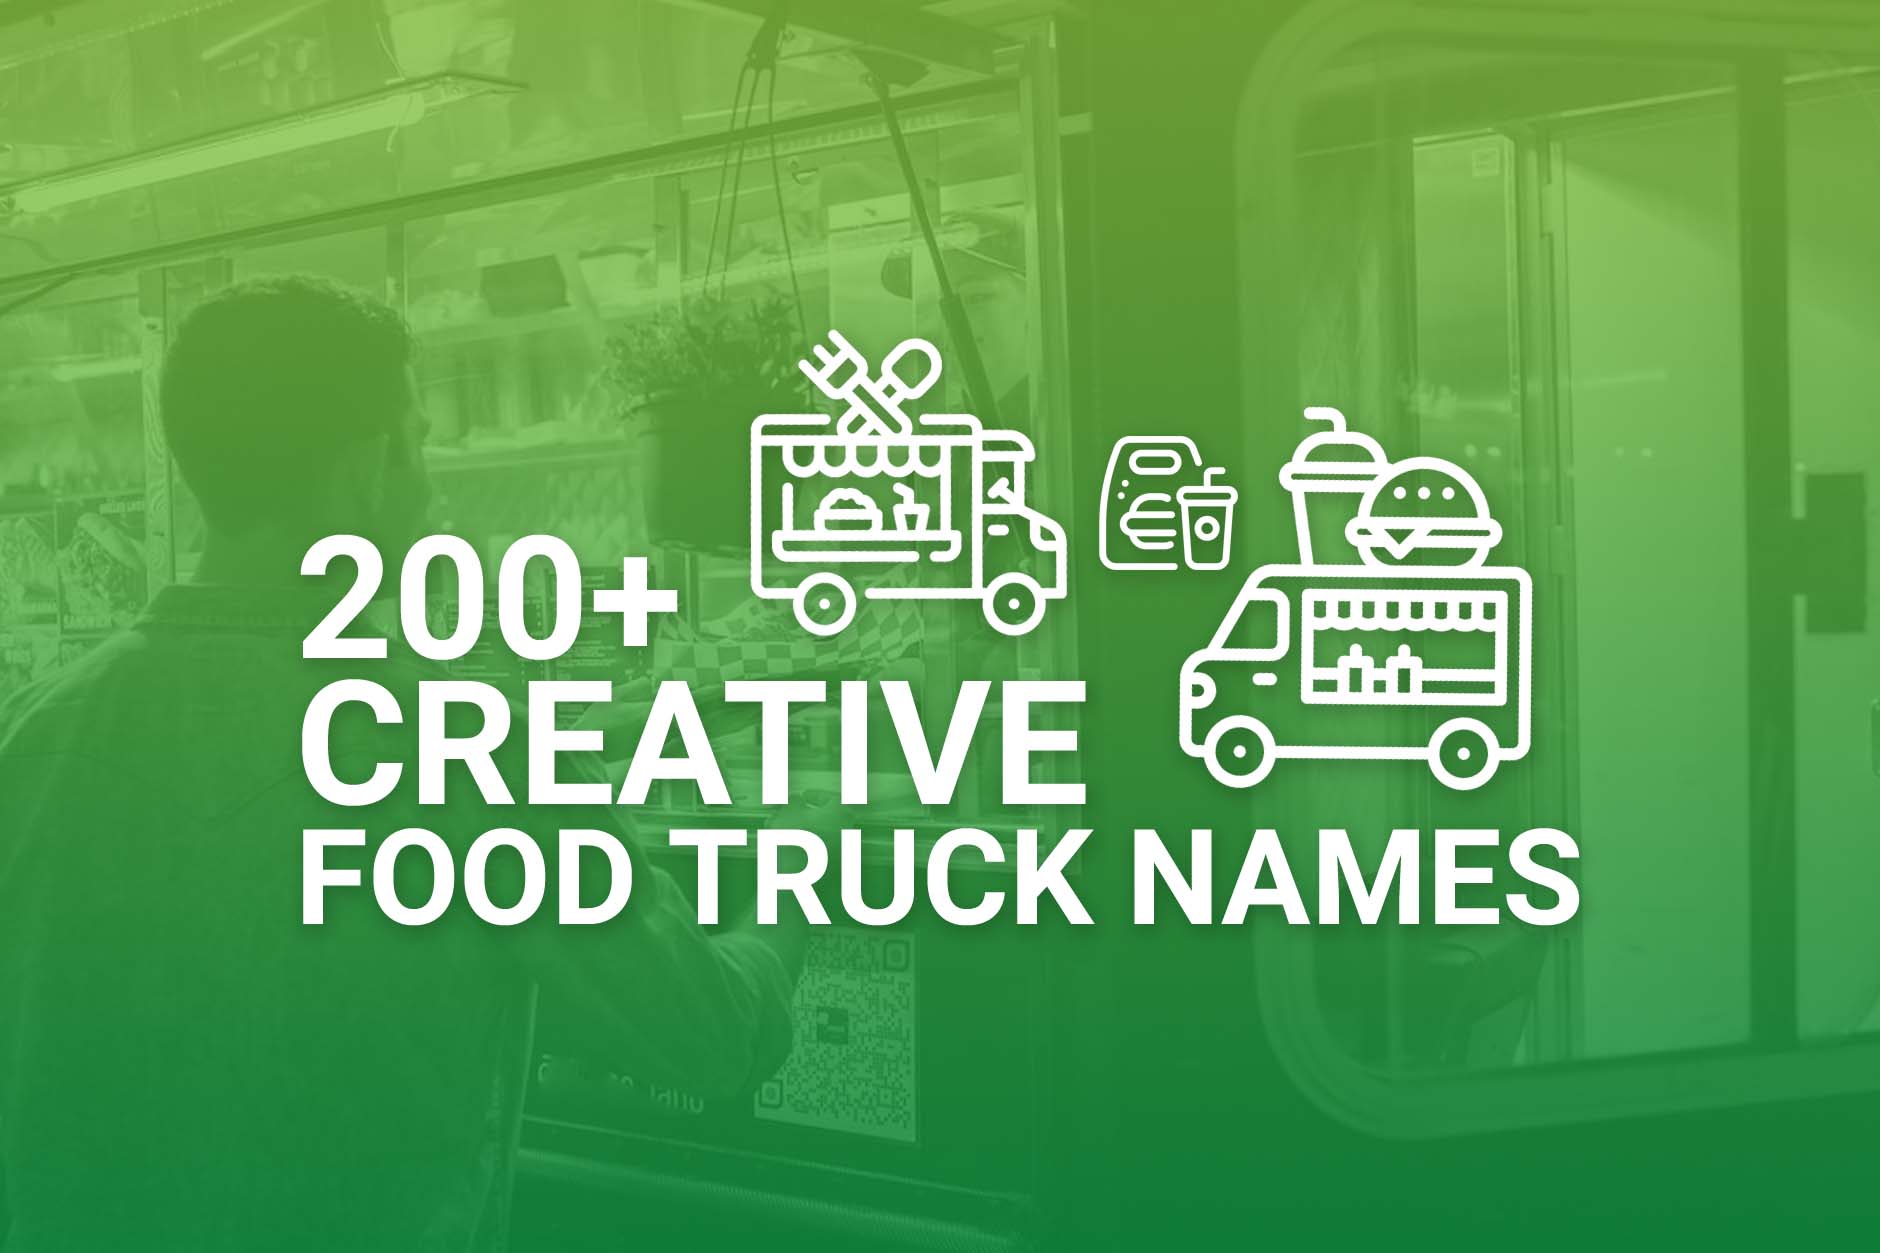 Creative Food Truck Names